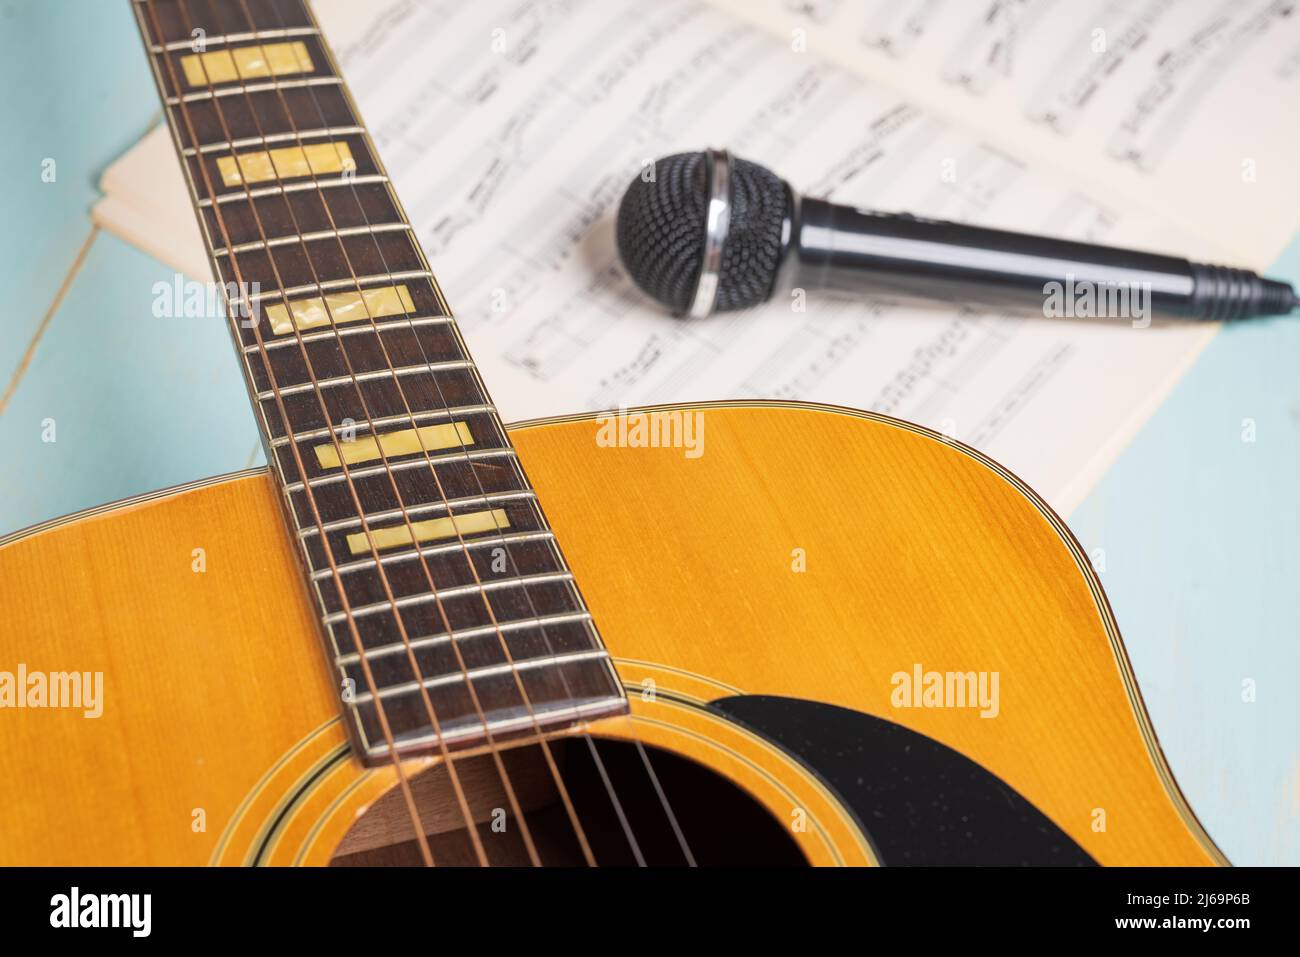 Musikaufnahme-Szene mit Gitarre, Notenblättern und schwarzem Mikrofon auf Holztisch Stockfoto